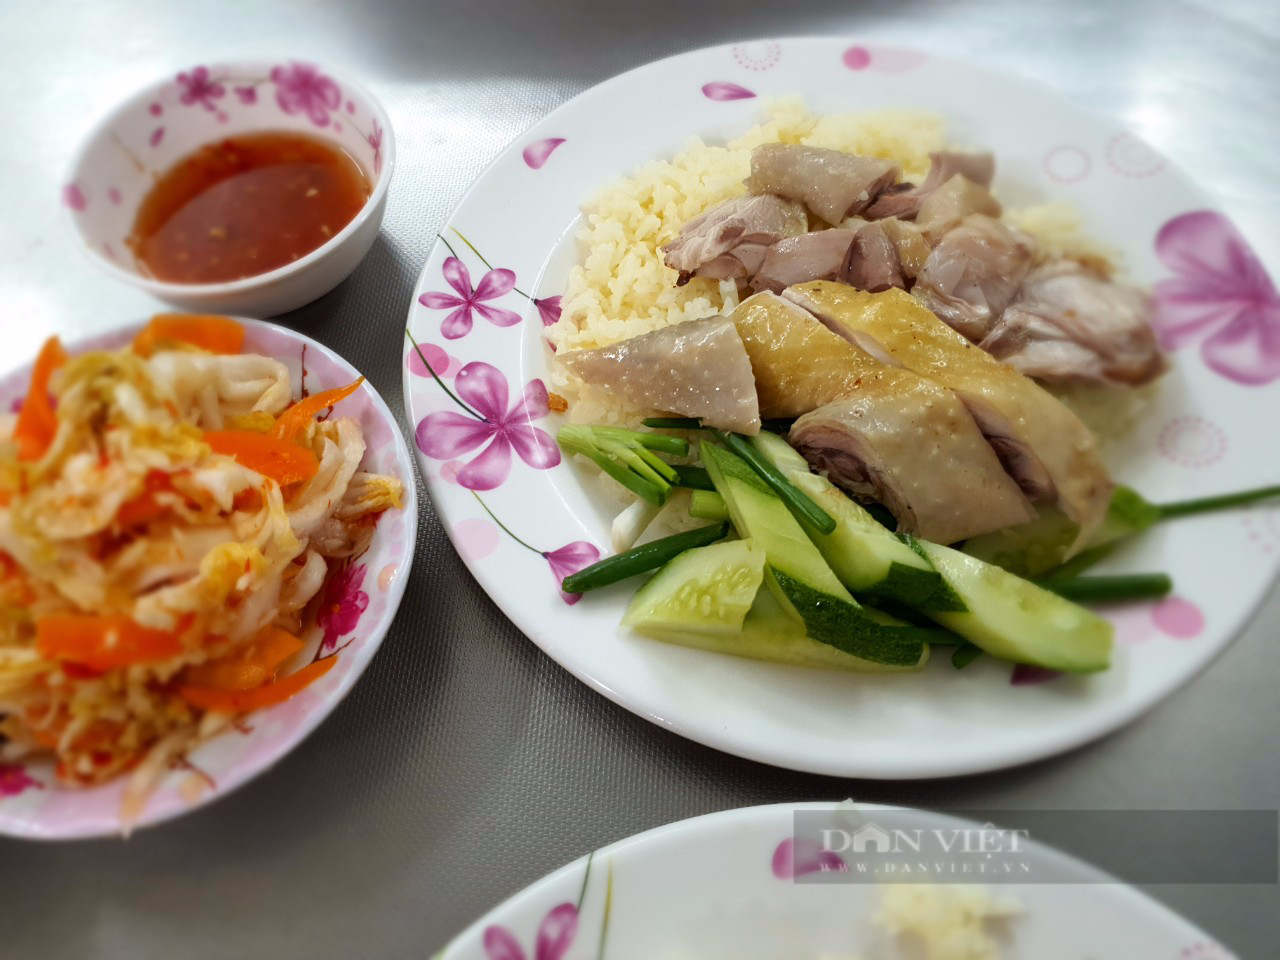 Quán cơm gà nổi tiếng khu Tân Định, ngoài gà luộc có cả heo quay, phá lấu, kimchi kiểu Việt Nam - Ảnh 4.